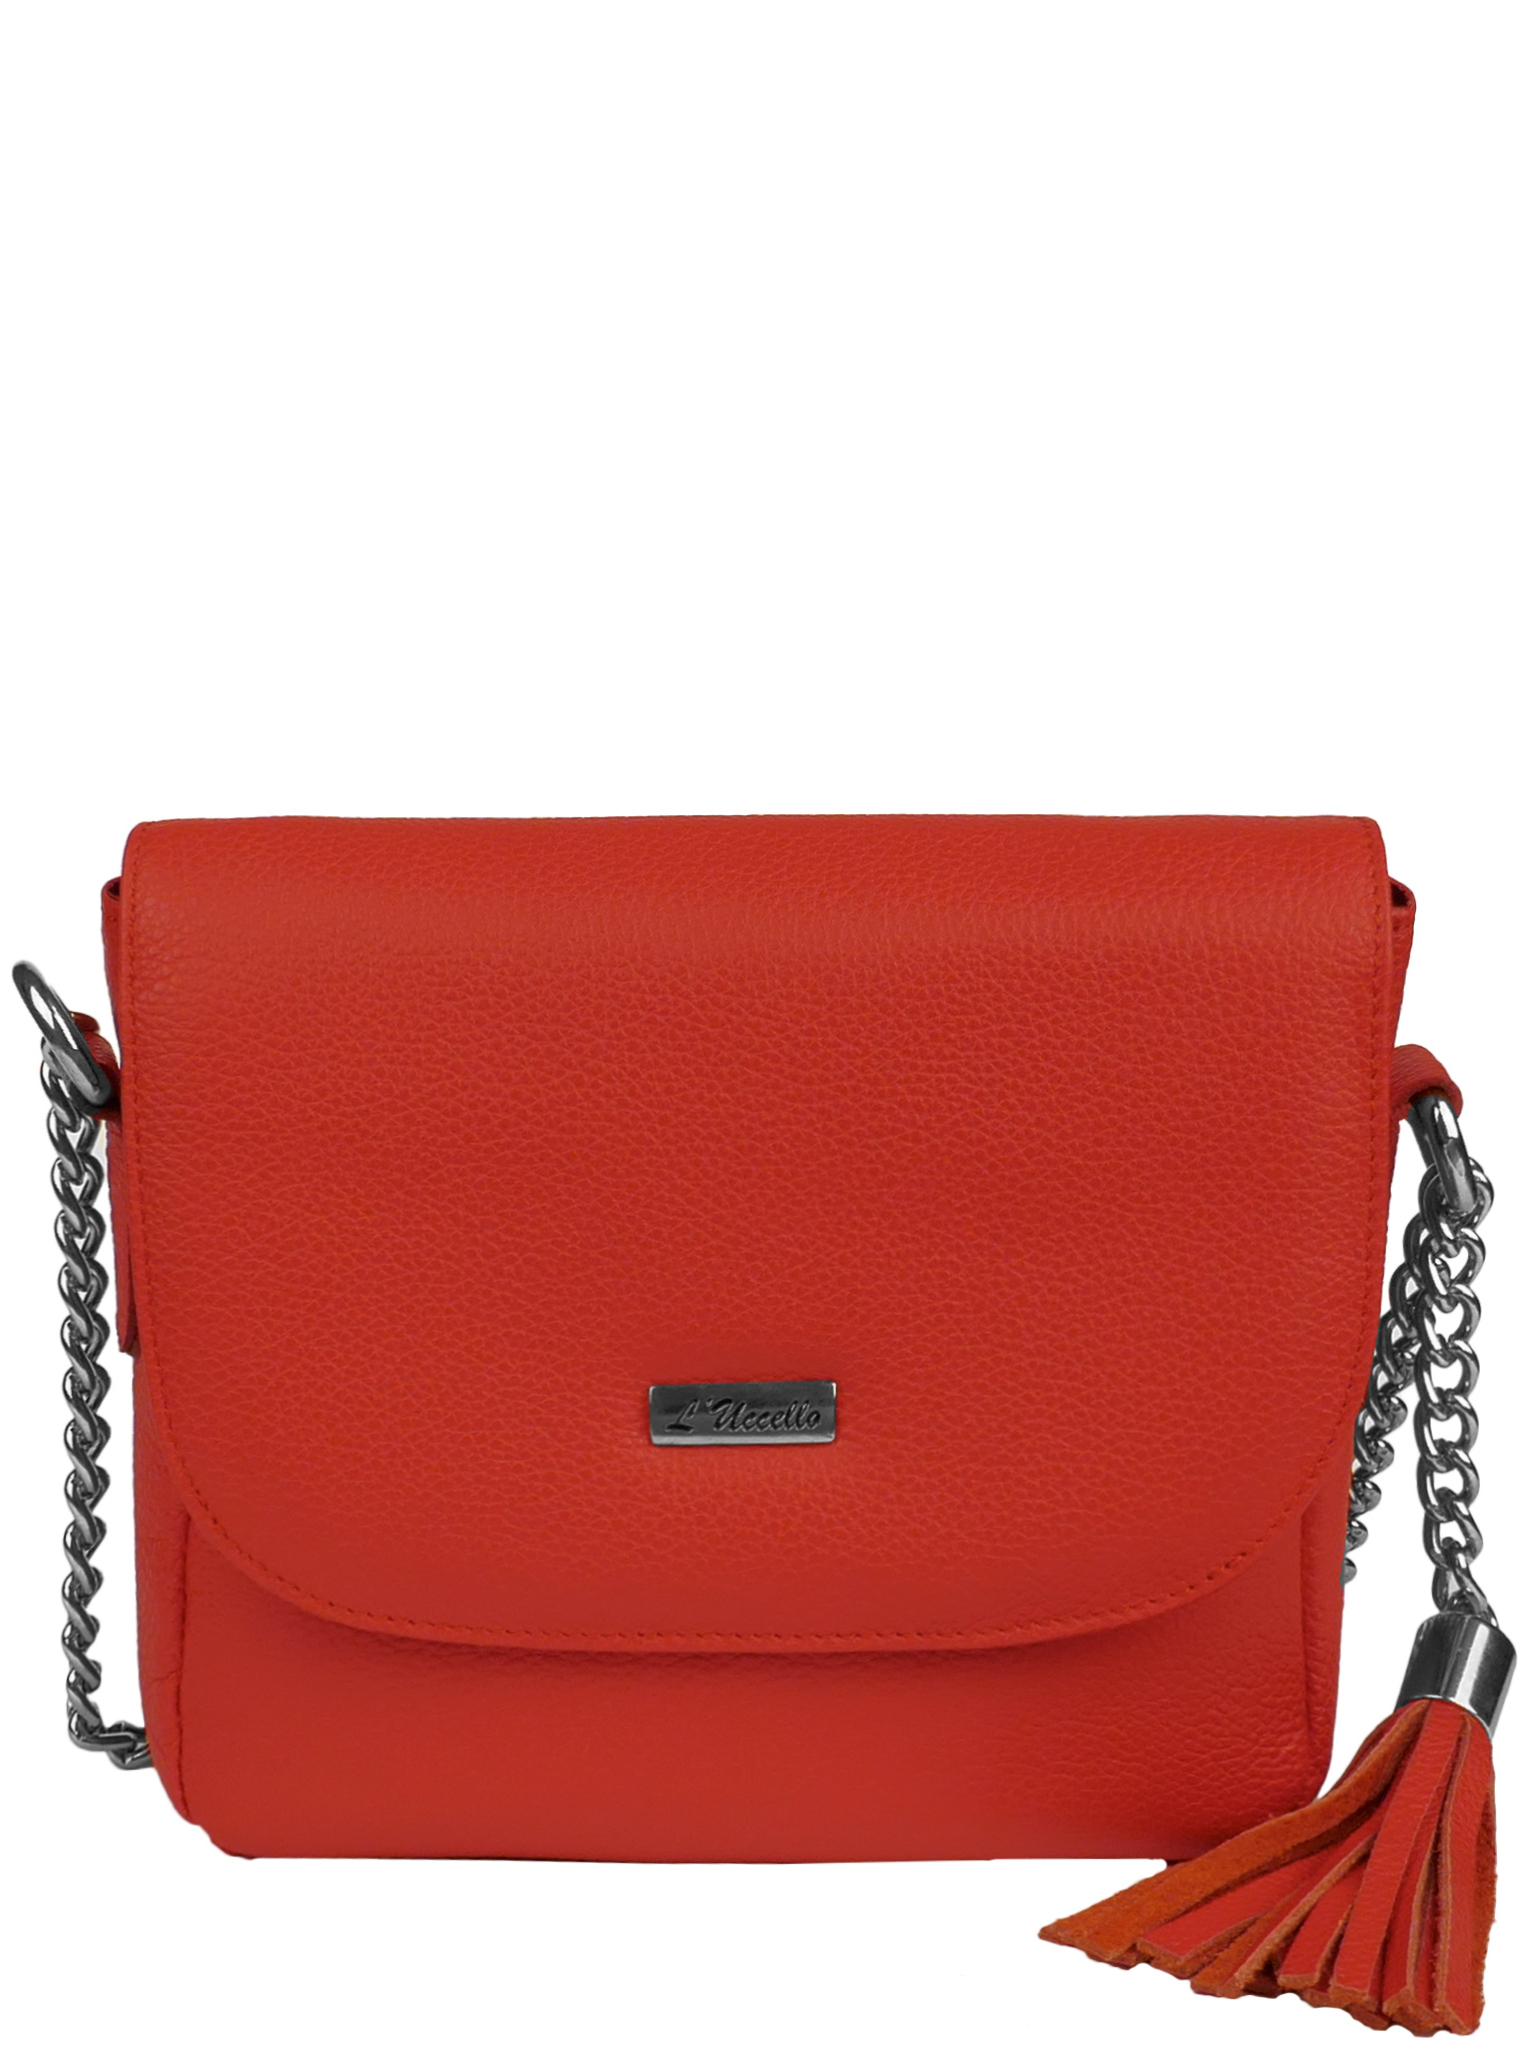 Комплект (брелок+сумка) женский LUccello 4051, красный L'Uccello. Цвет: красный